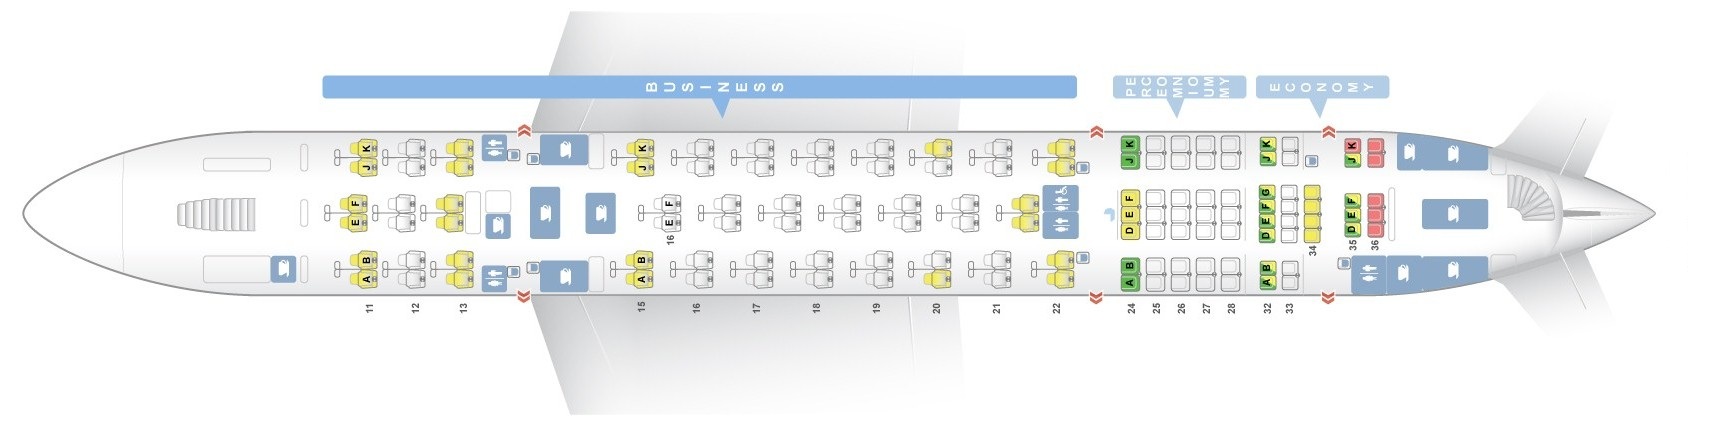 Airbus A380 800 Seating Chart Qantas